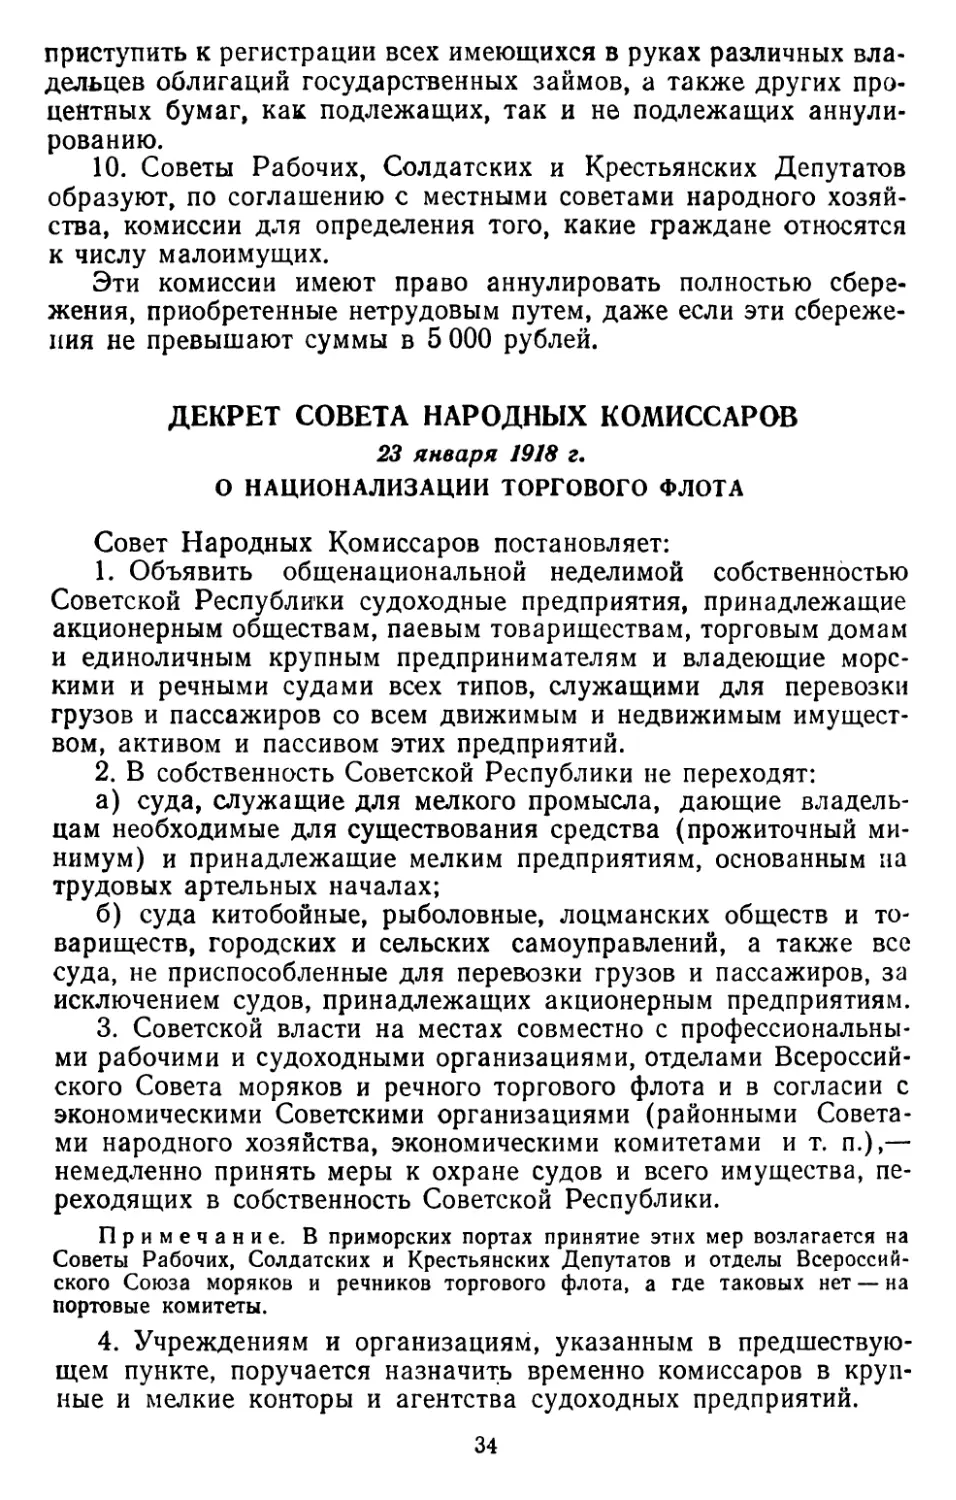 Декрет Совета Народных Комиссаров, 23 января 1918 г. О национализации торгового флота